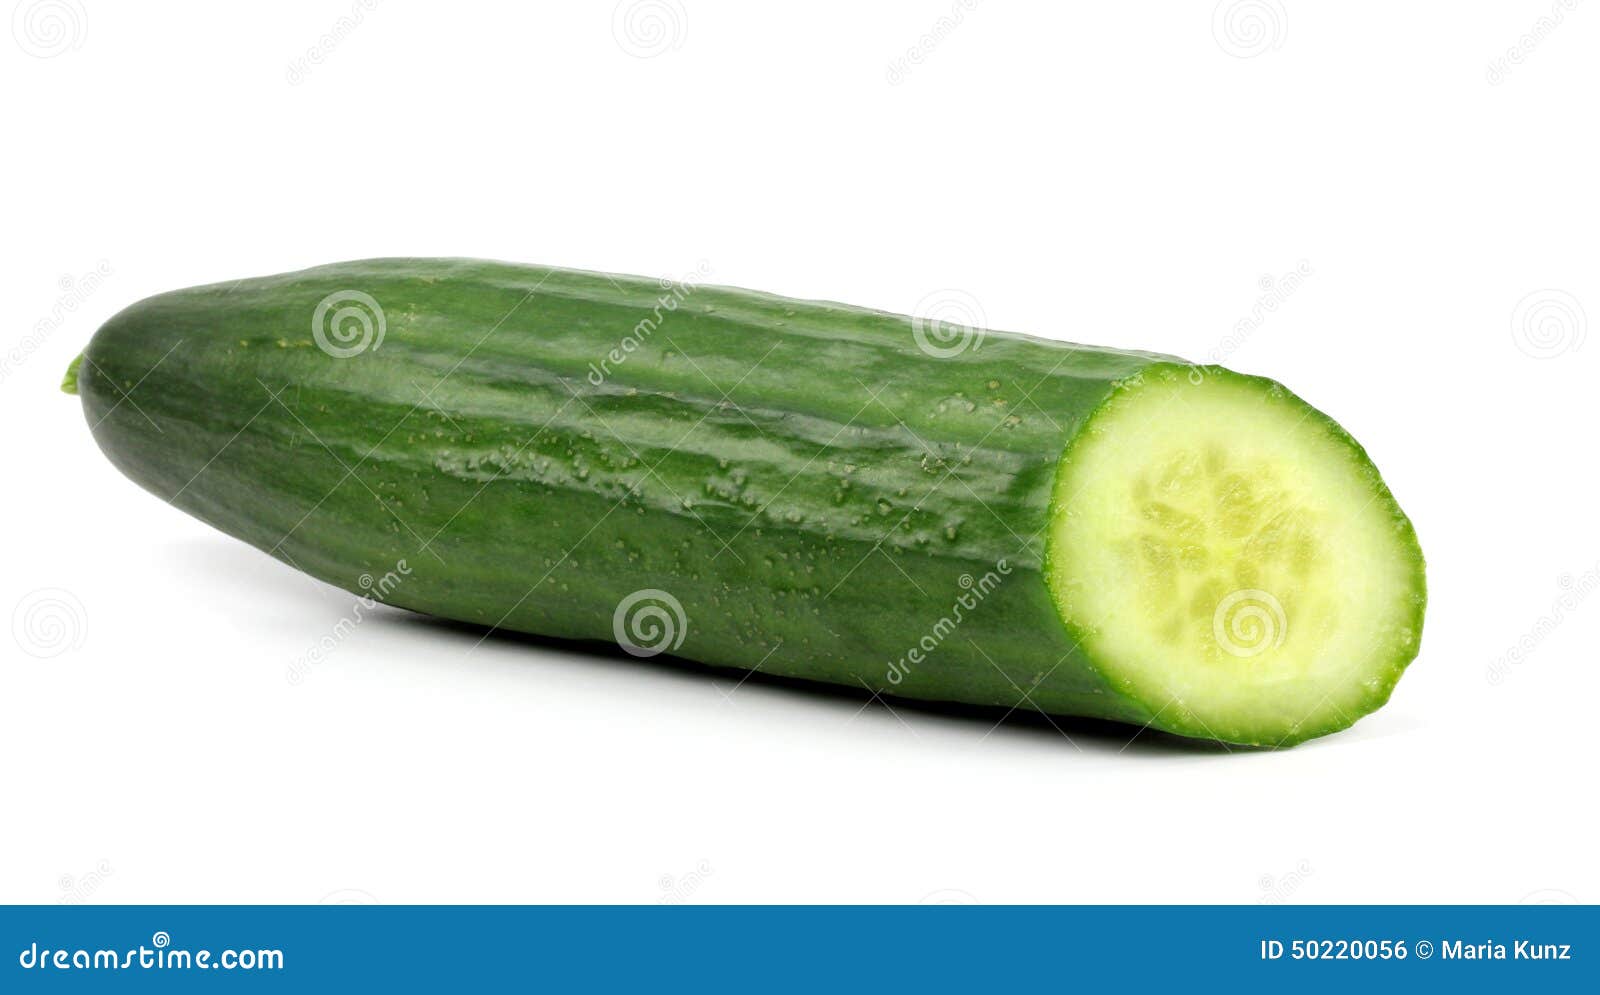 Cucumber Penis Stock Photos image